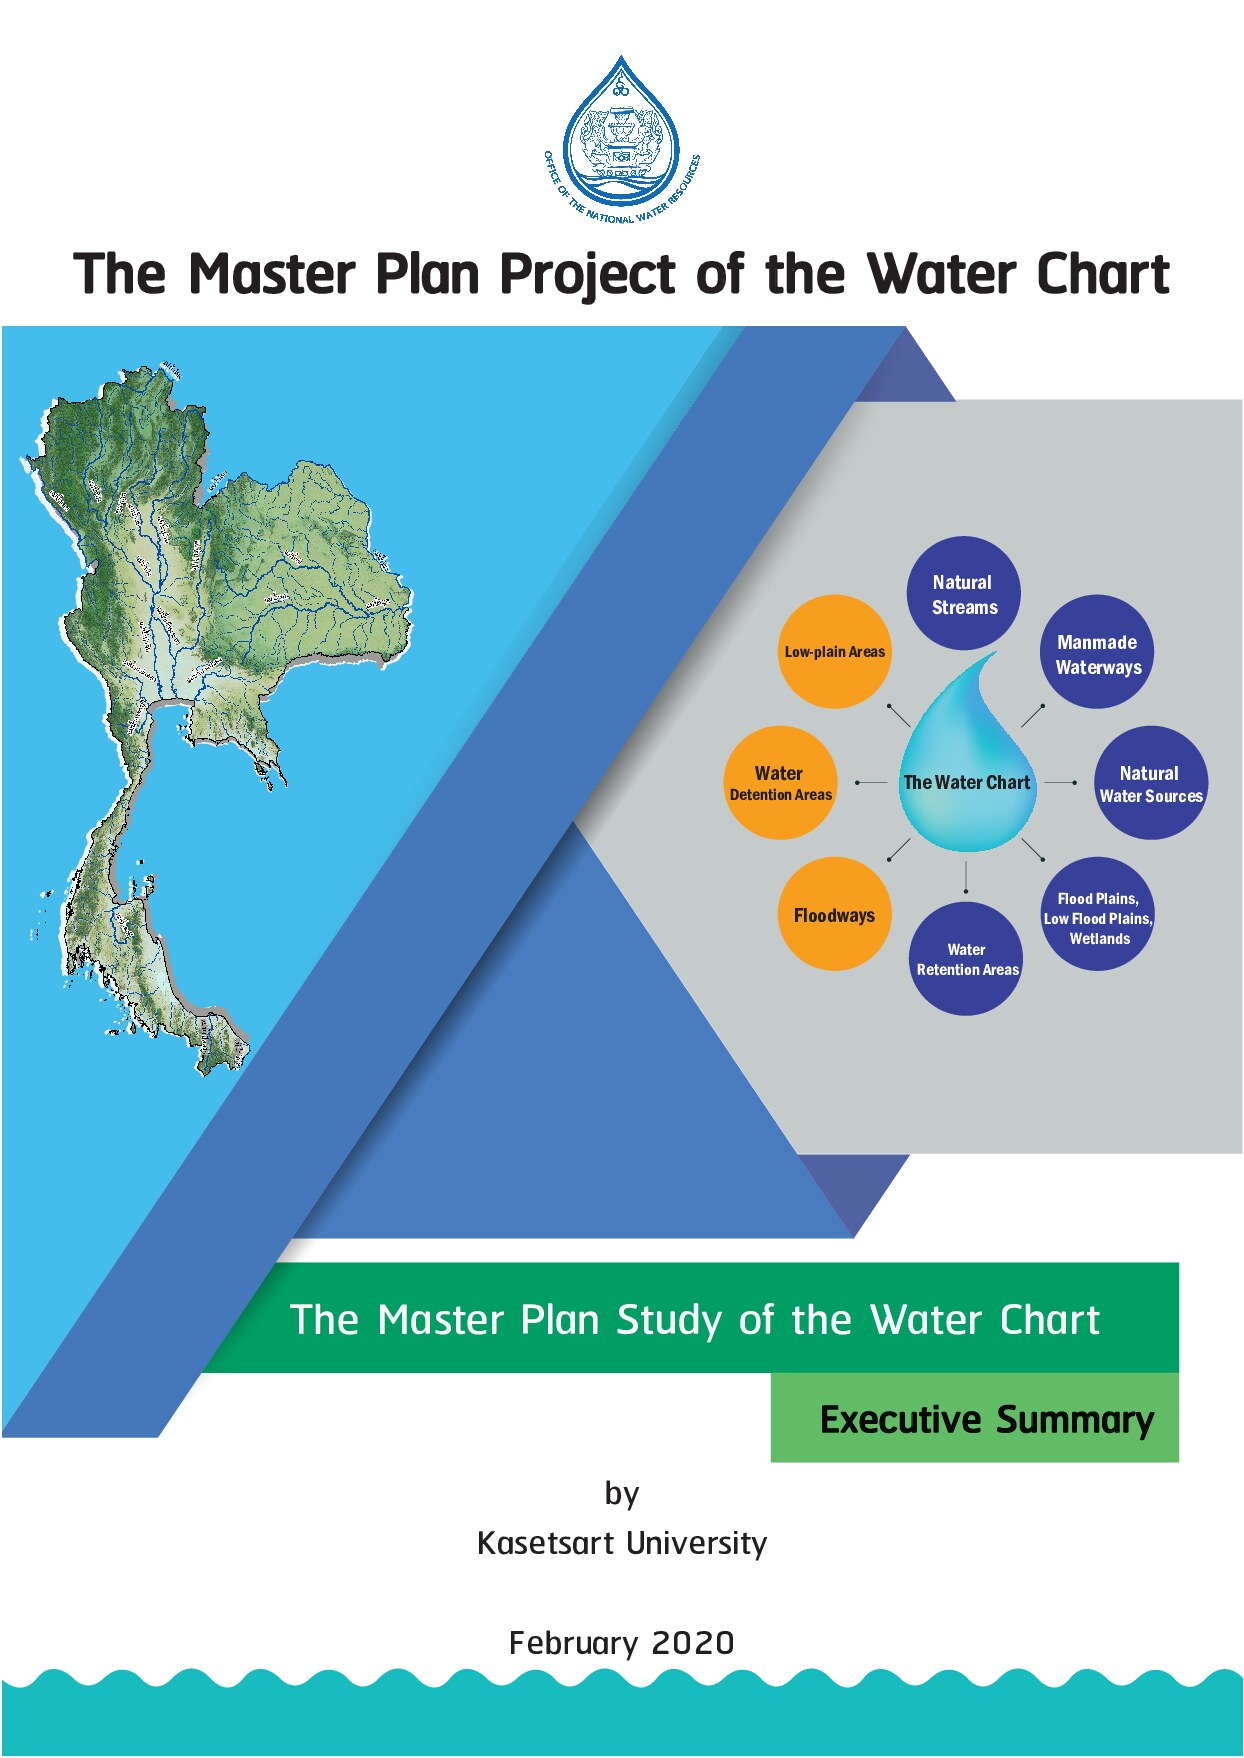 เล่มที่ 3 รายงานสรุปสำหรับผู้บริหาร (ฉบับภาษาอังกฤษ) Executive sum Final Report โครงการจัดทำแผนหลักการจัดทำผังน้ำ  สำนักงานทรัพยากรน้ำแห่งชาติ